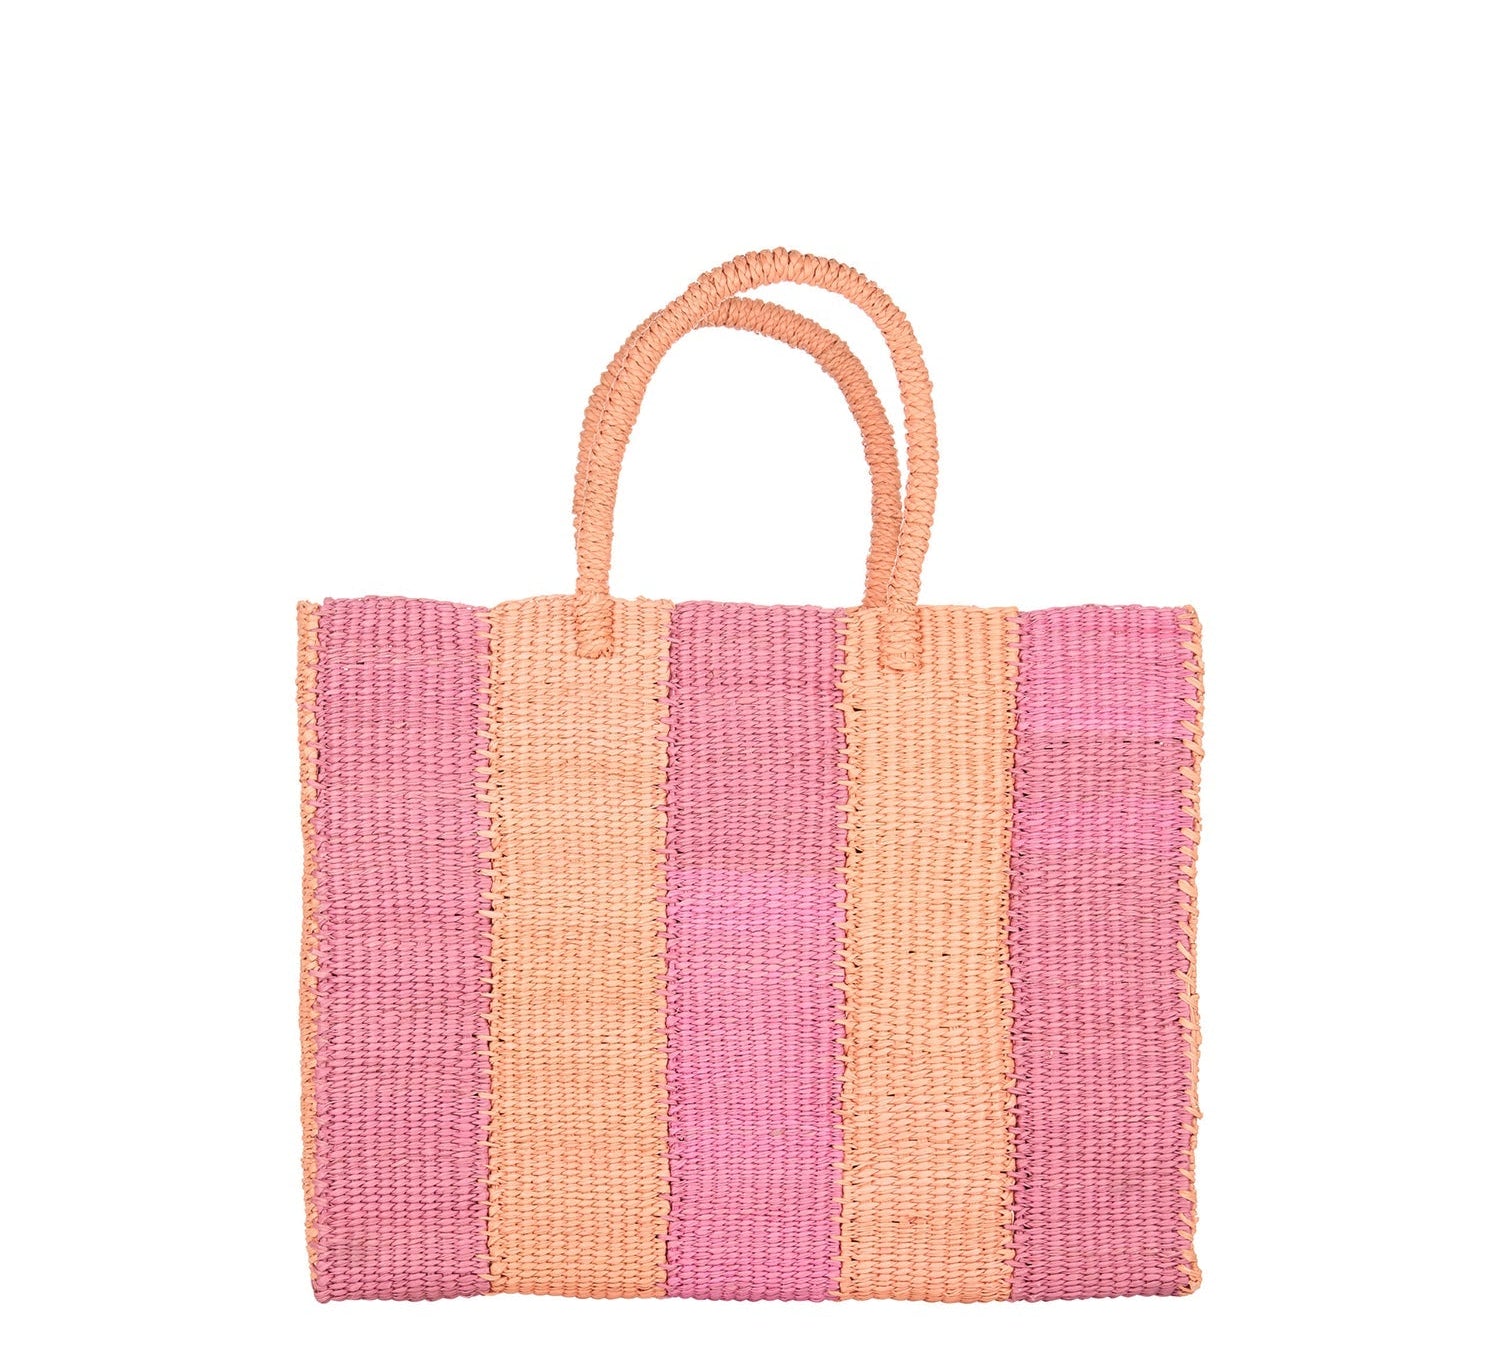 Murano - Small bag artesano